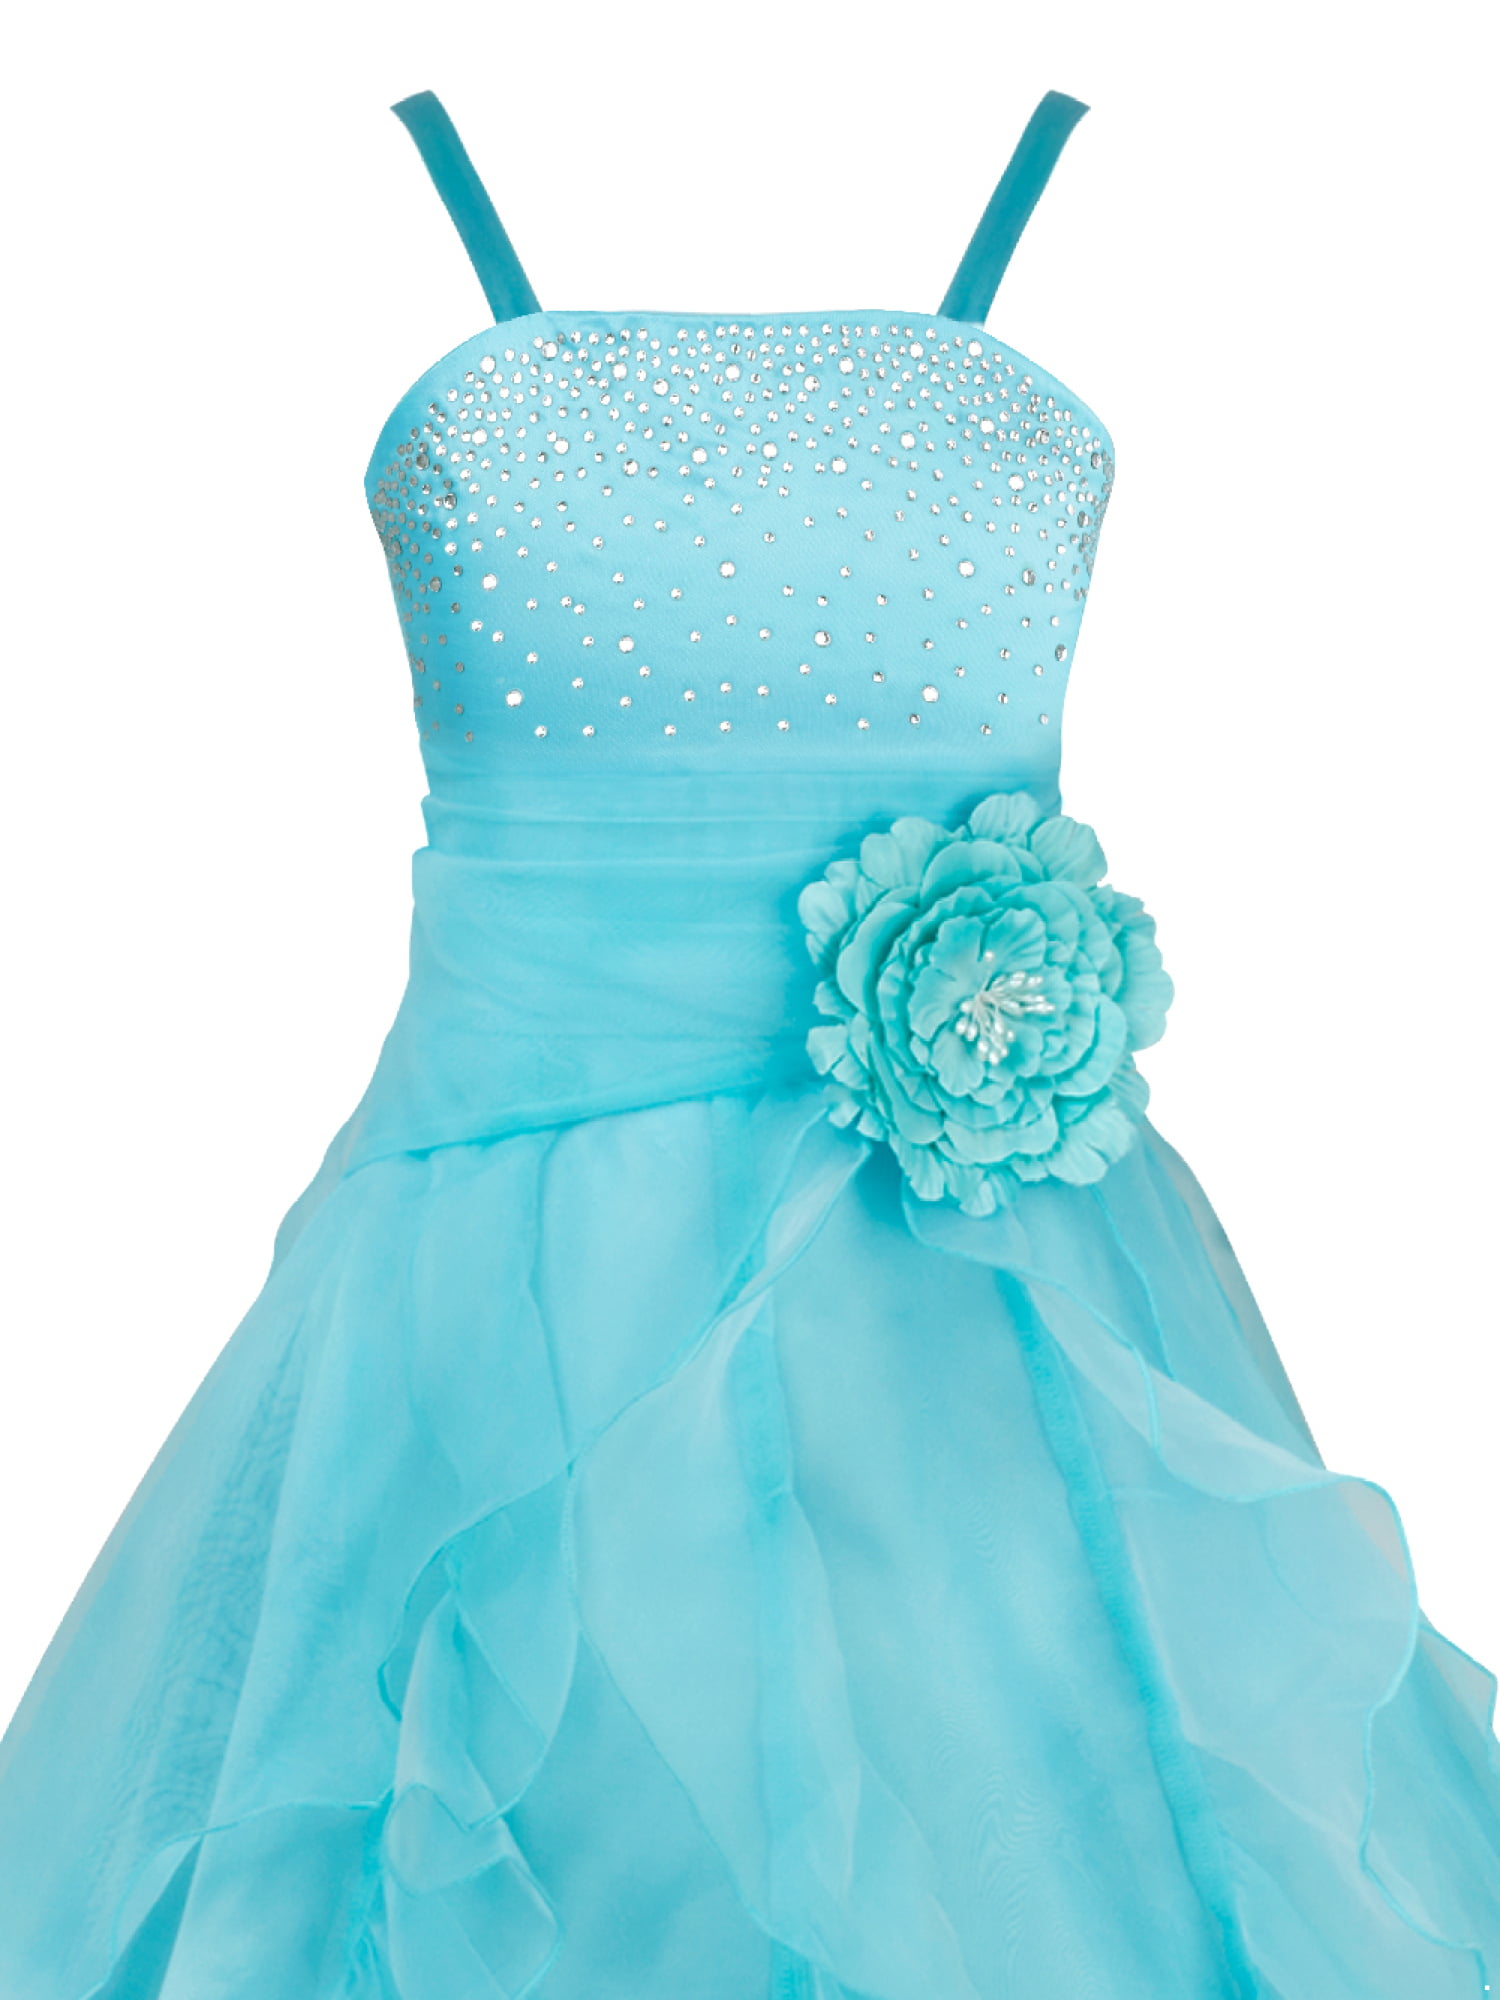 YiZYiF Kids Big Girls Flower Party Wedding Gown Bridesmaid Organza Ruffle Dress